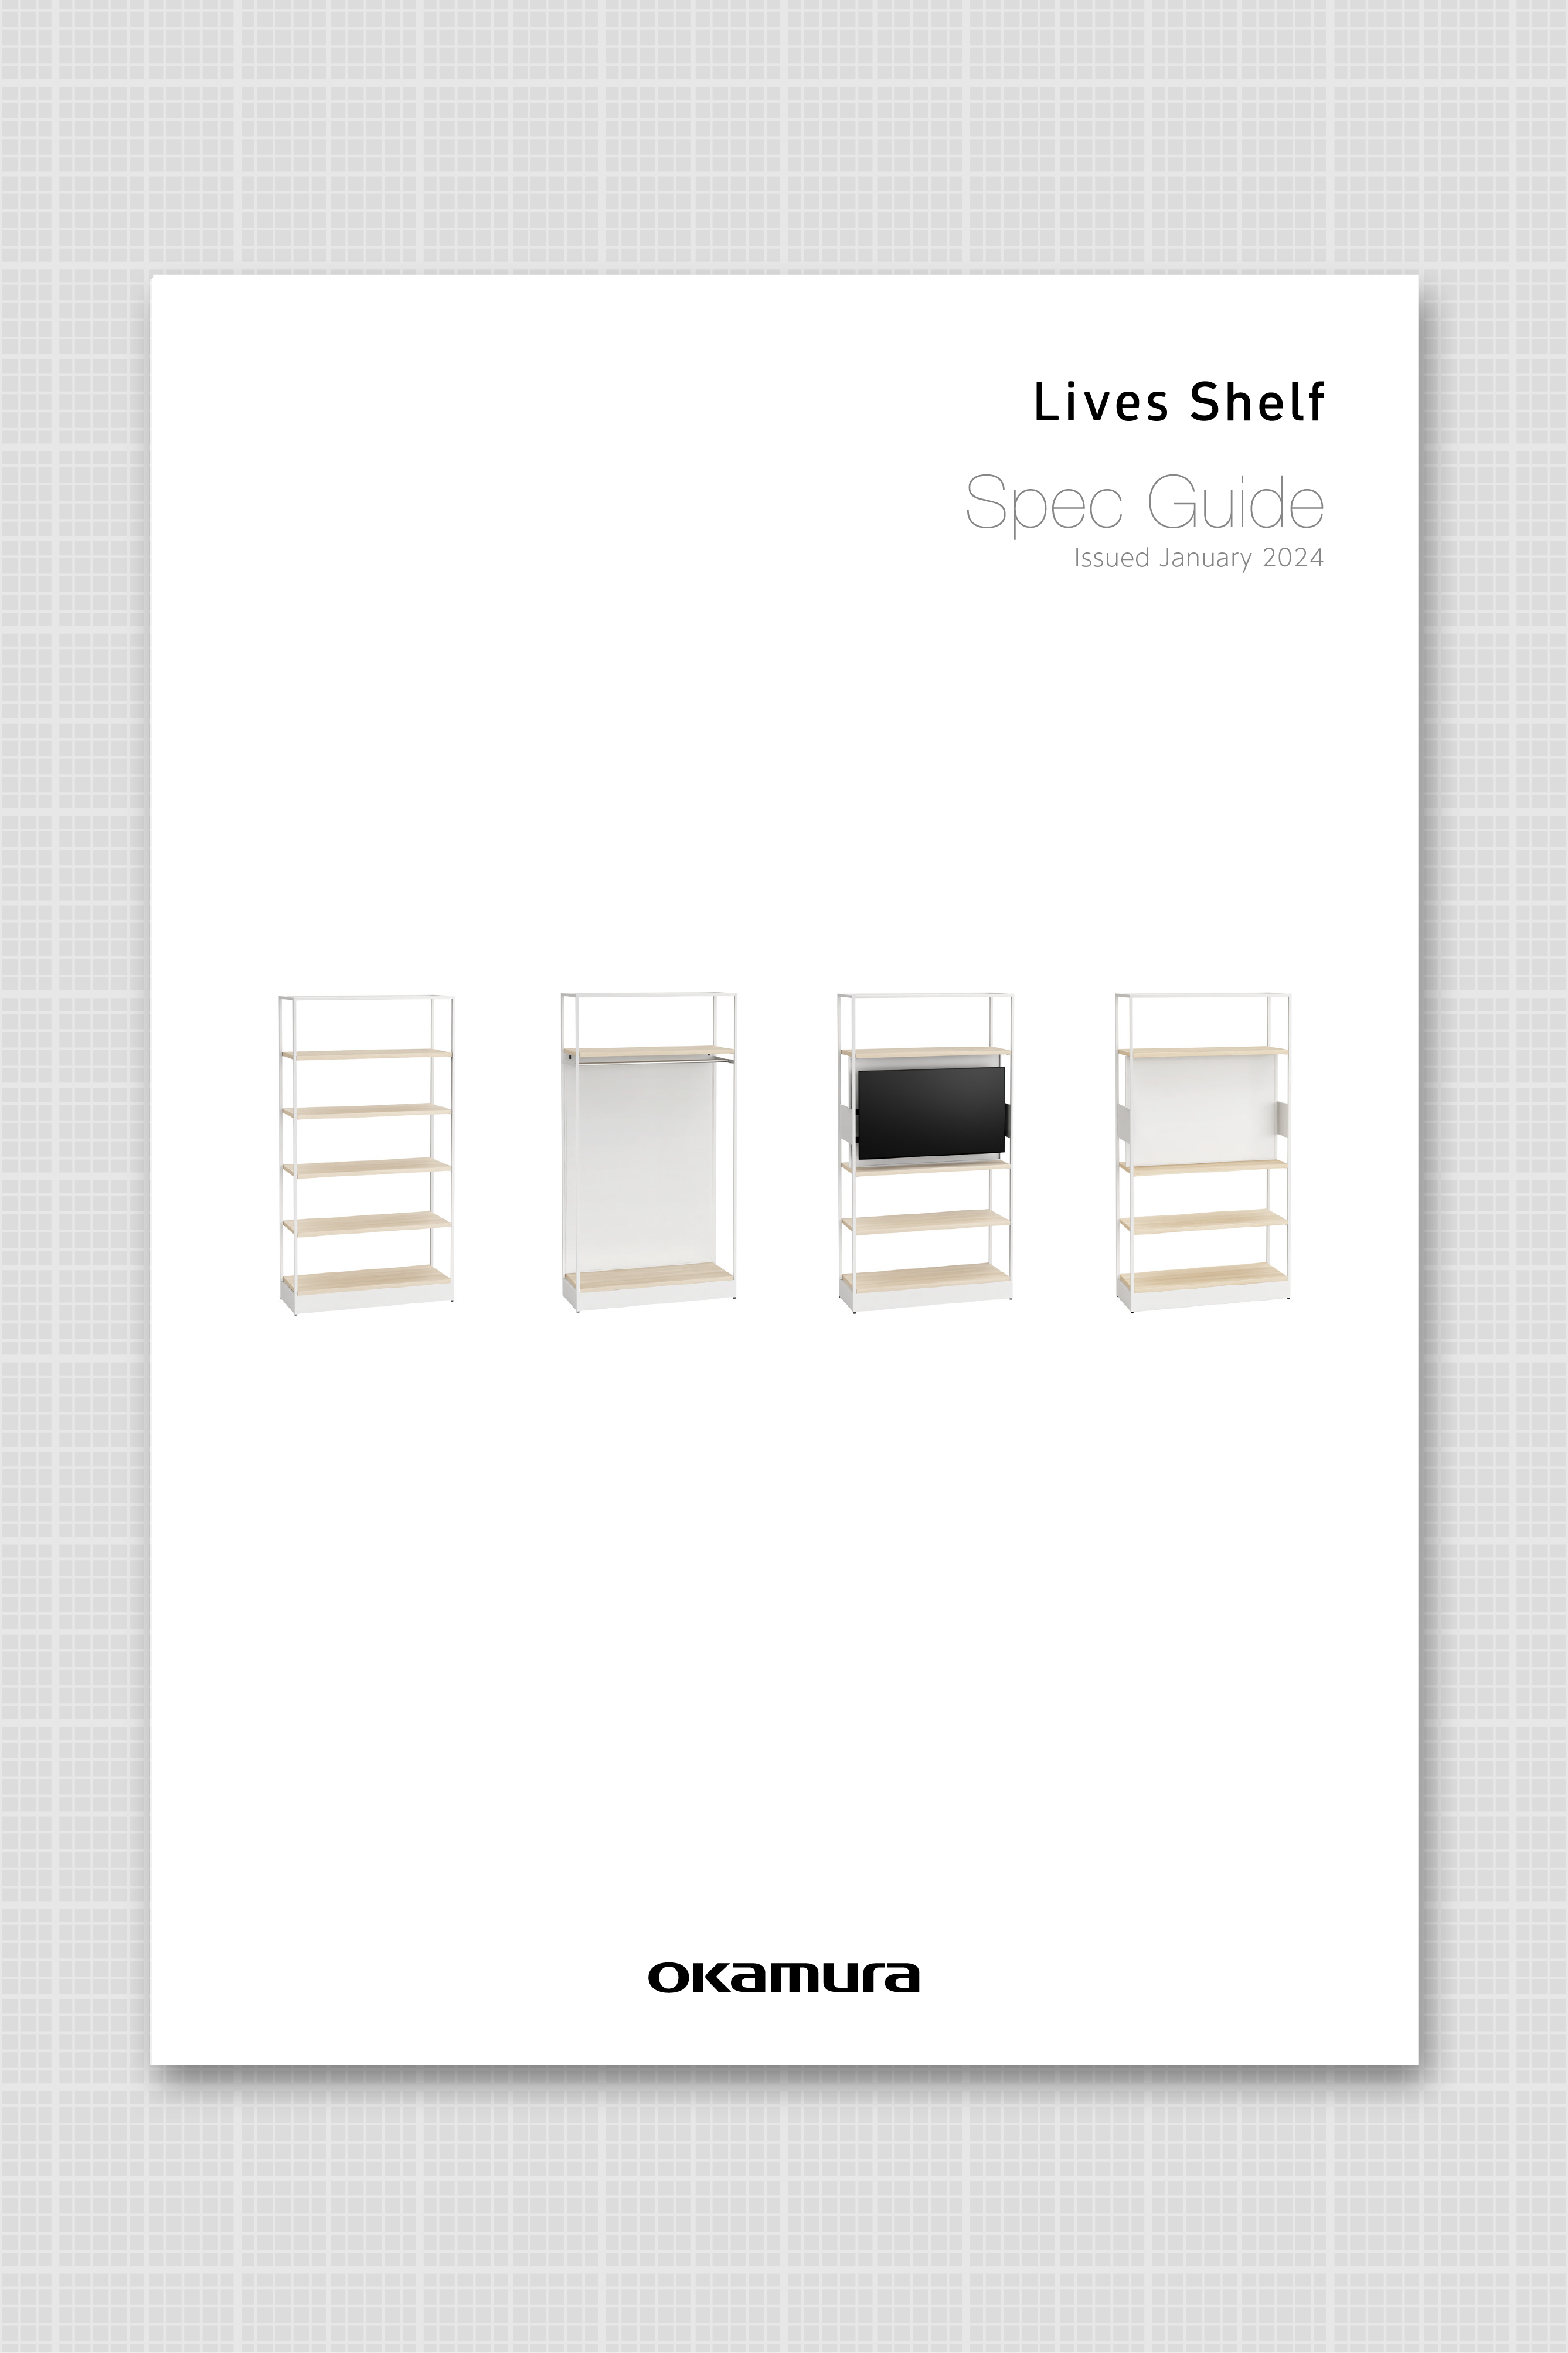 Lives Shelf Spec Guide